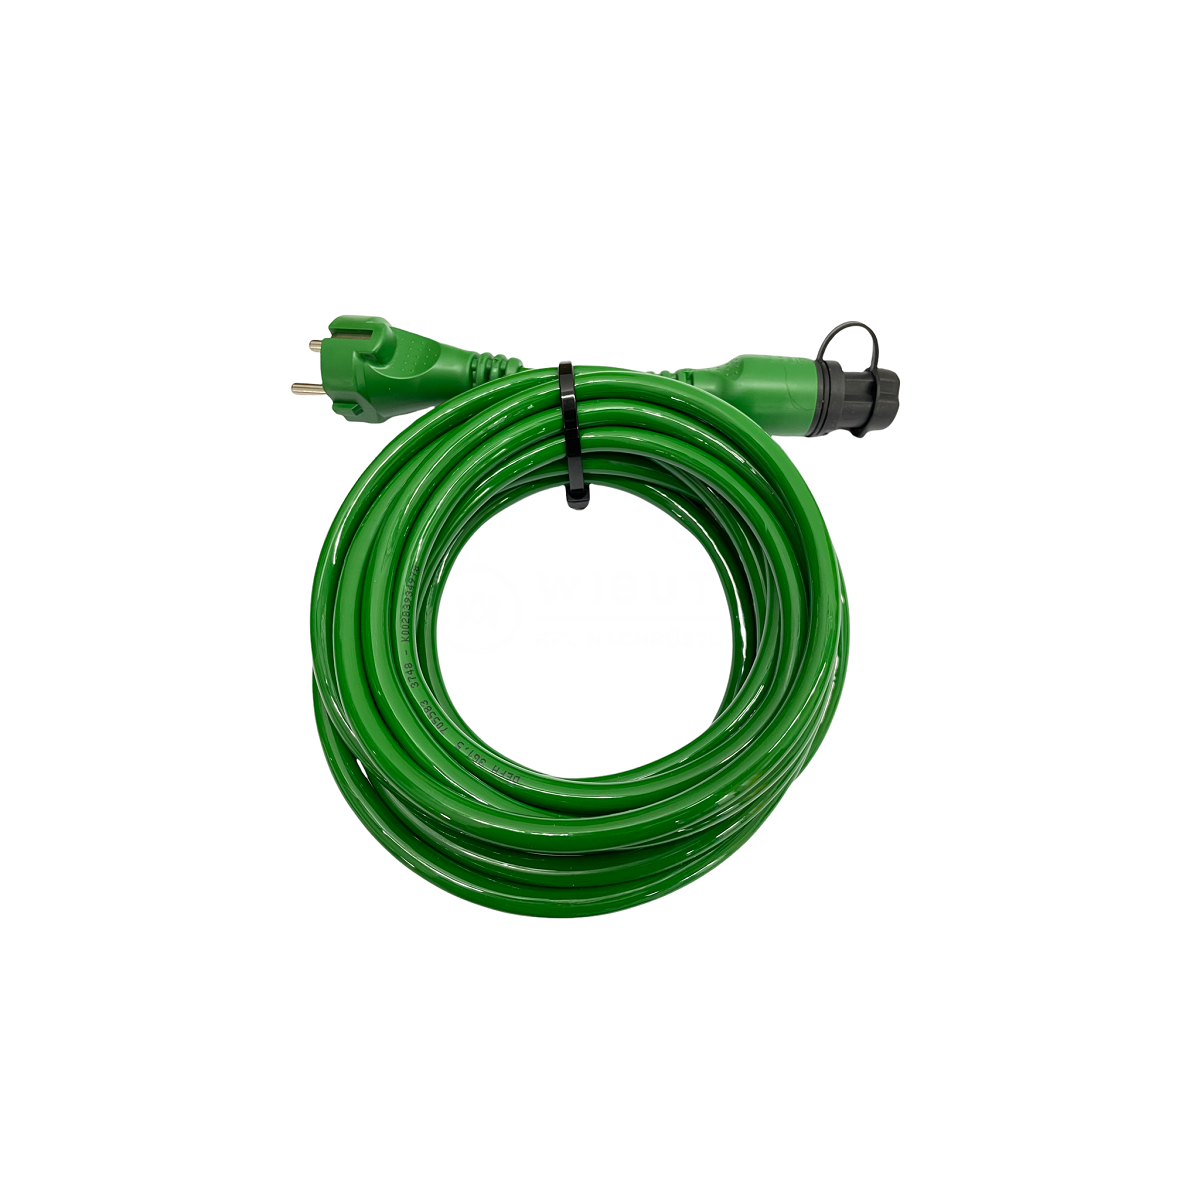 https://wibutec-shop.com/media/image/product/18448/lg/defa-miniplug-anschlusskabel-green-link-5-meter.png